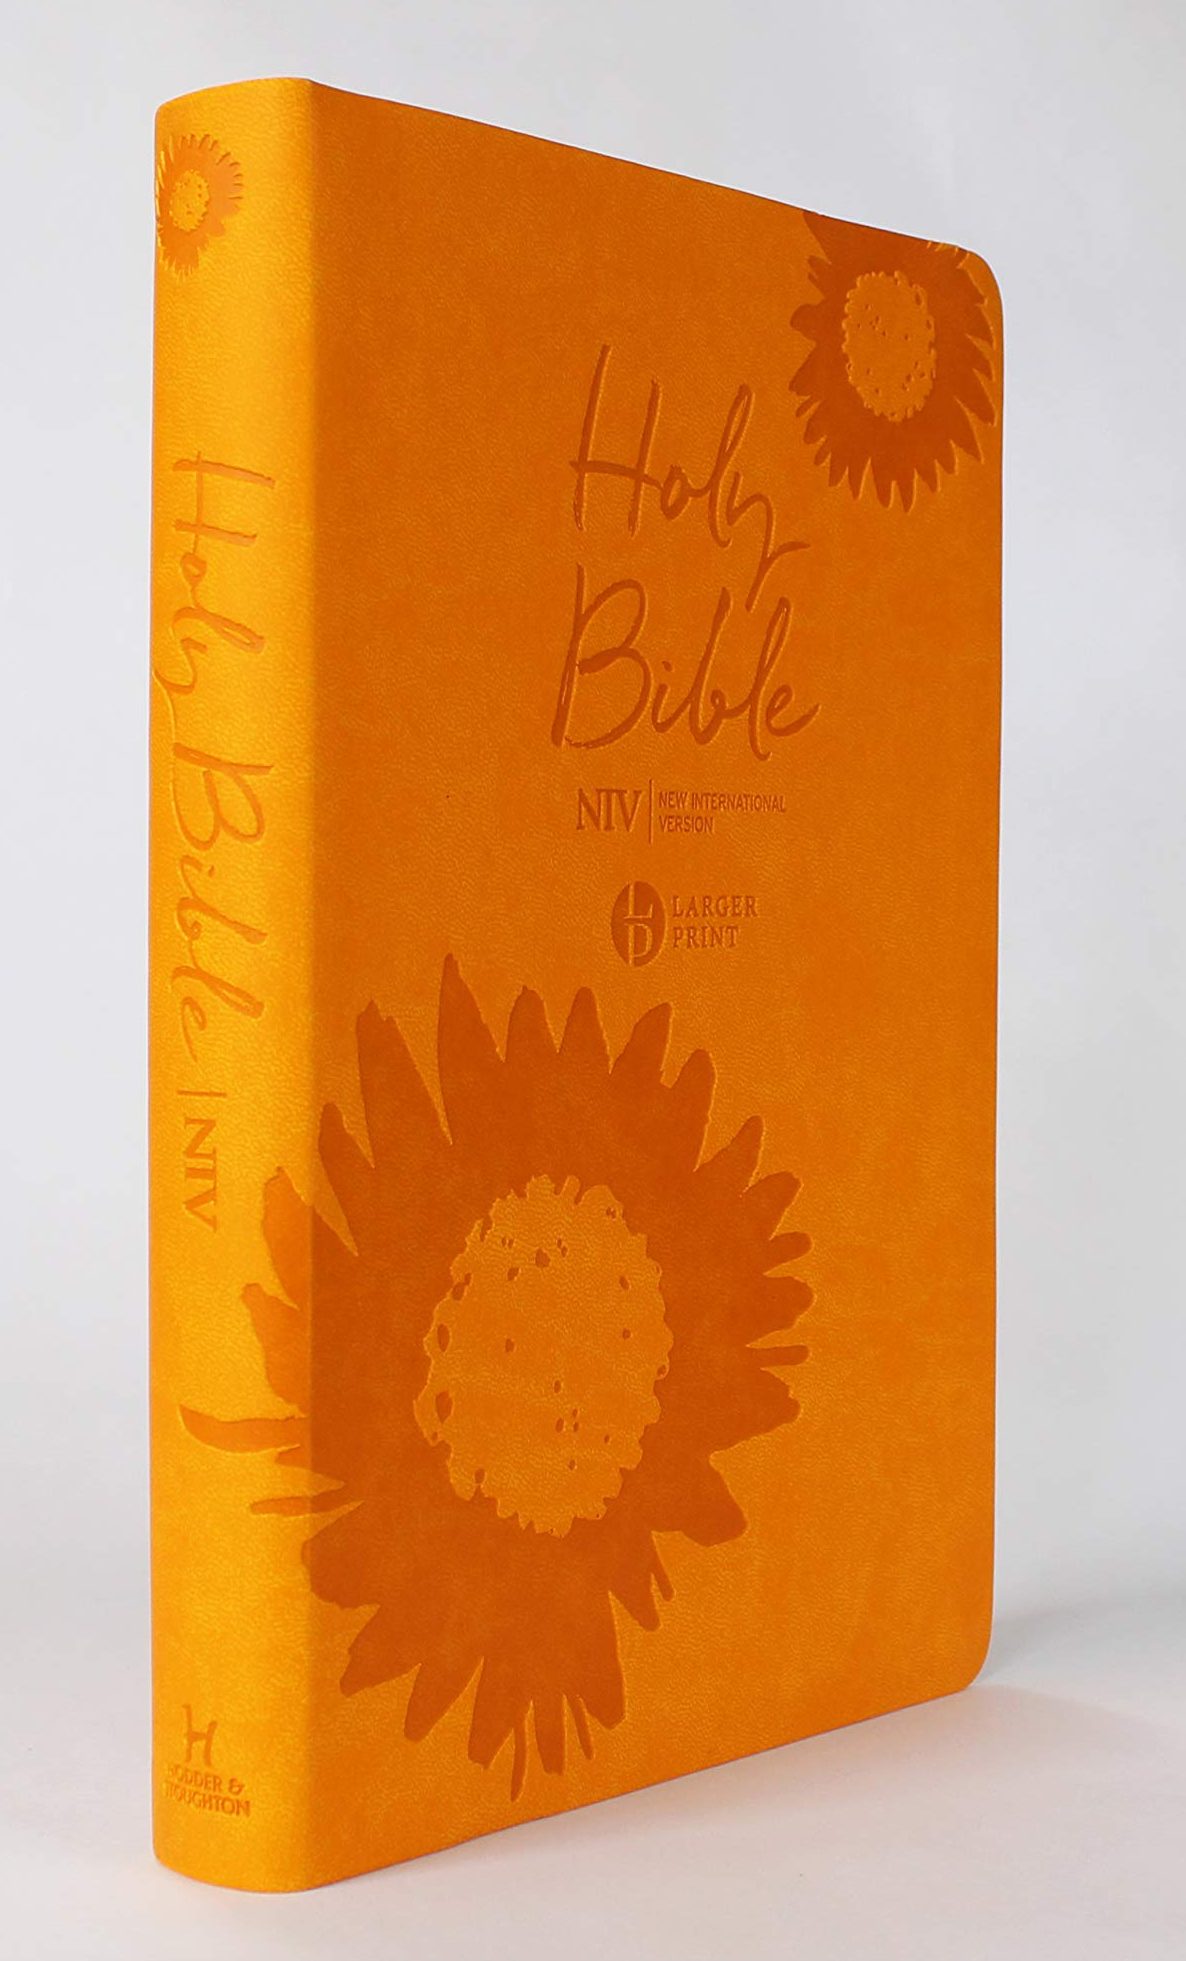 Anglais, Bible NIV, larger print - With cardboard box